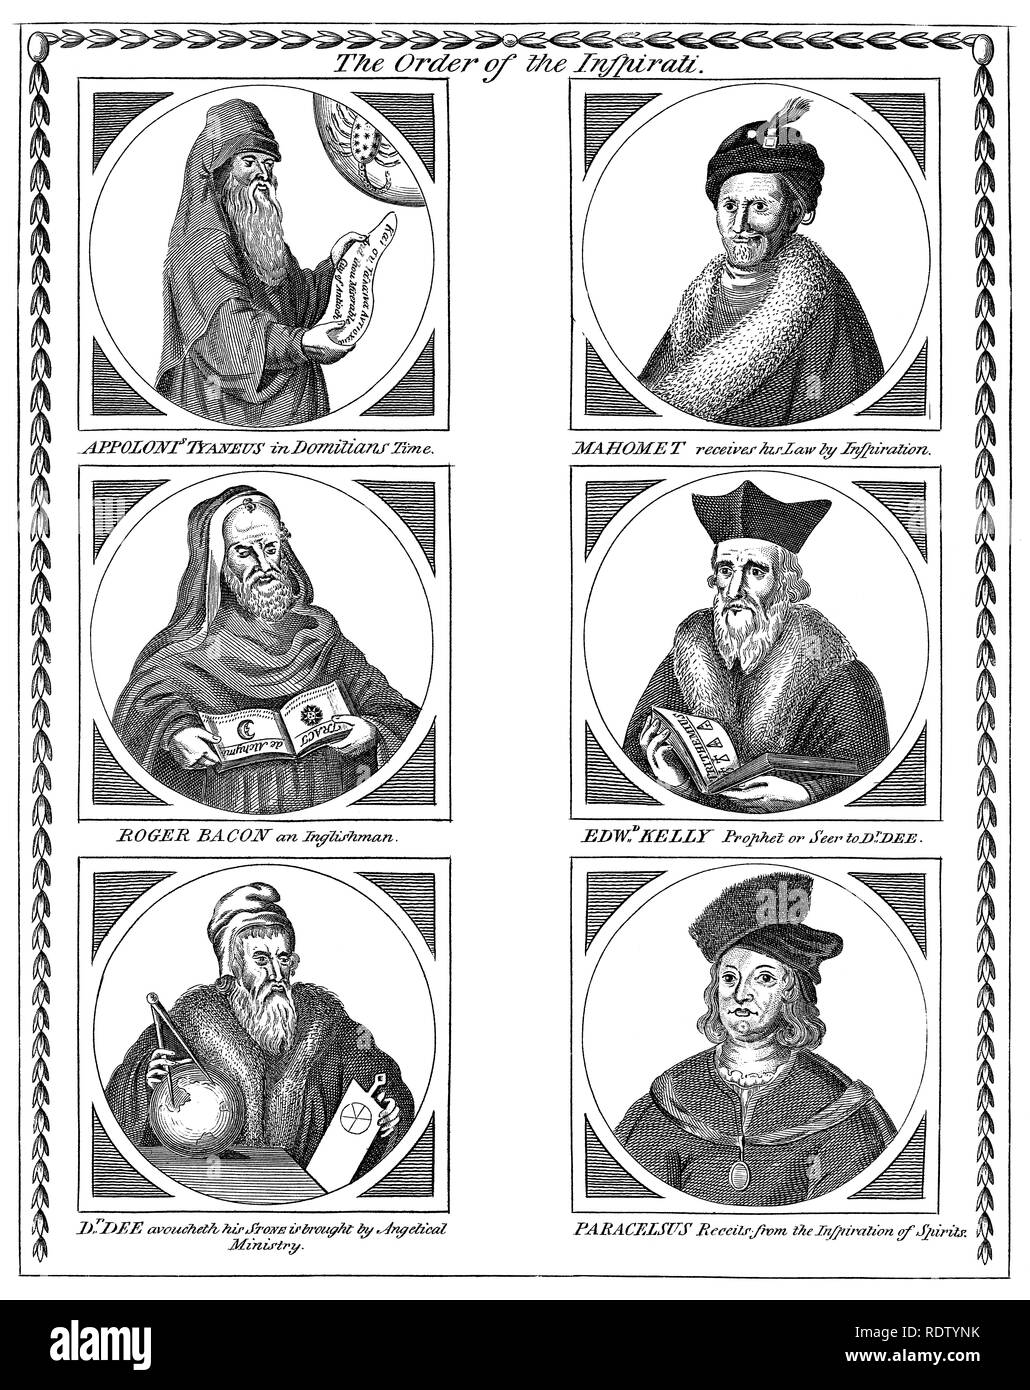 L'Ordine degli aspirati - questa era una società Degli uomini europei del XVI secolo che studiavano esoterici o occulti documentazione Foto Stock